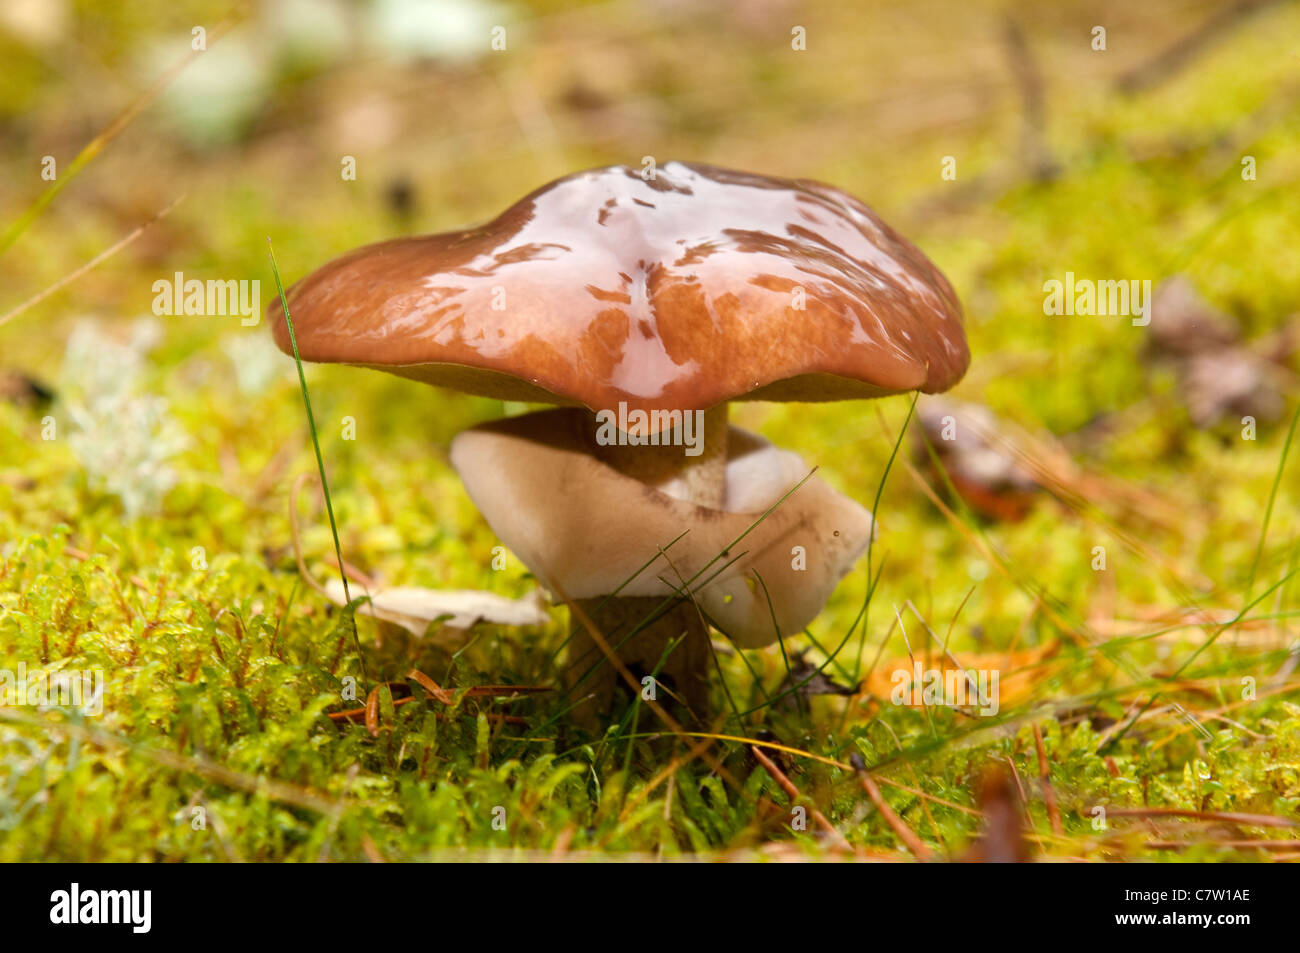 Mushrooms (Suillus variegatus) in autumn forest Stock Photo